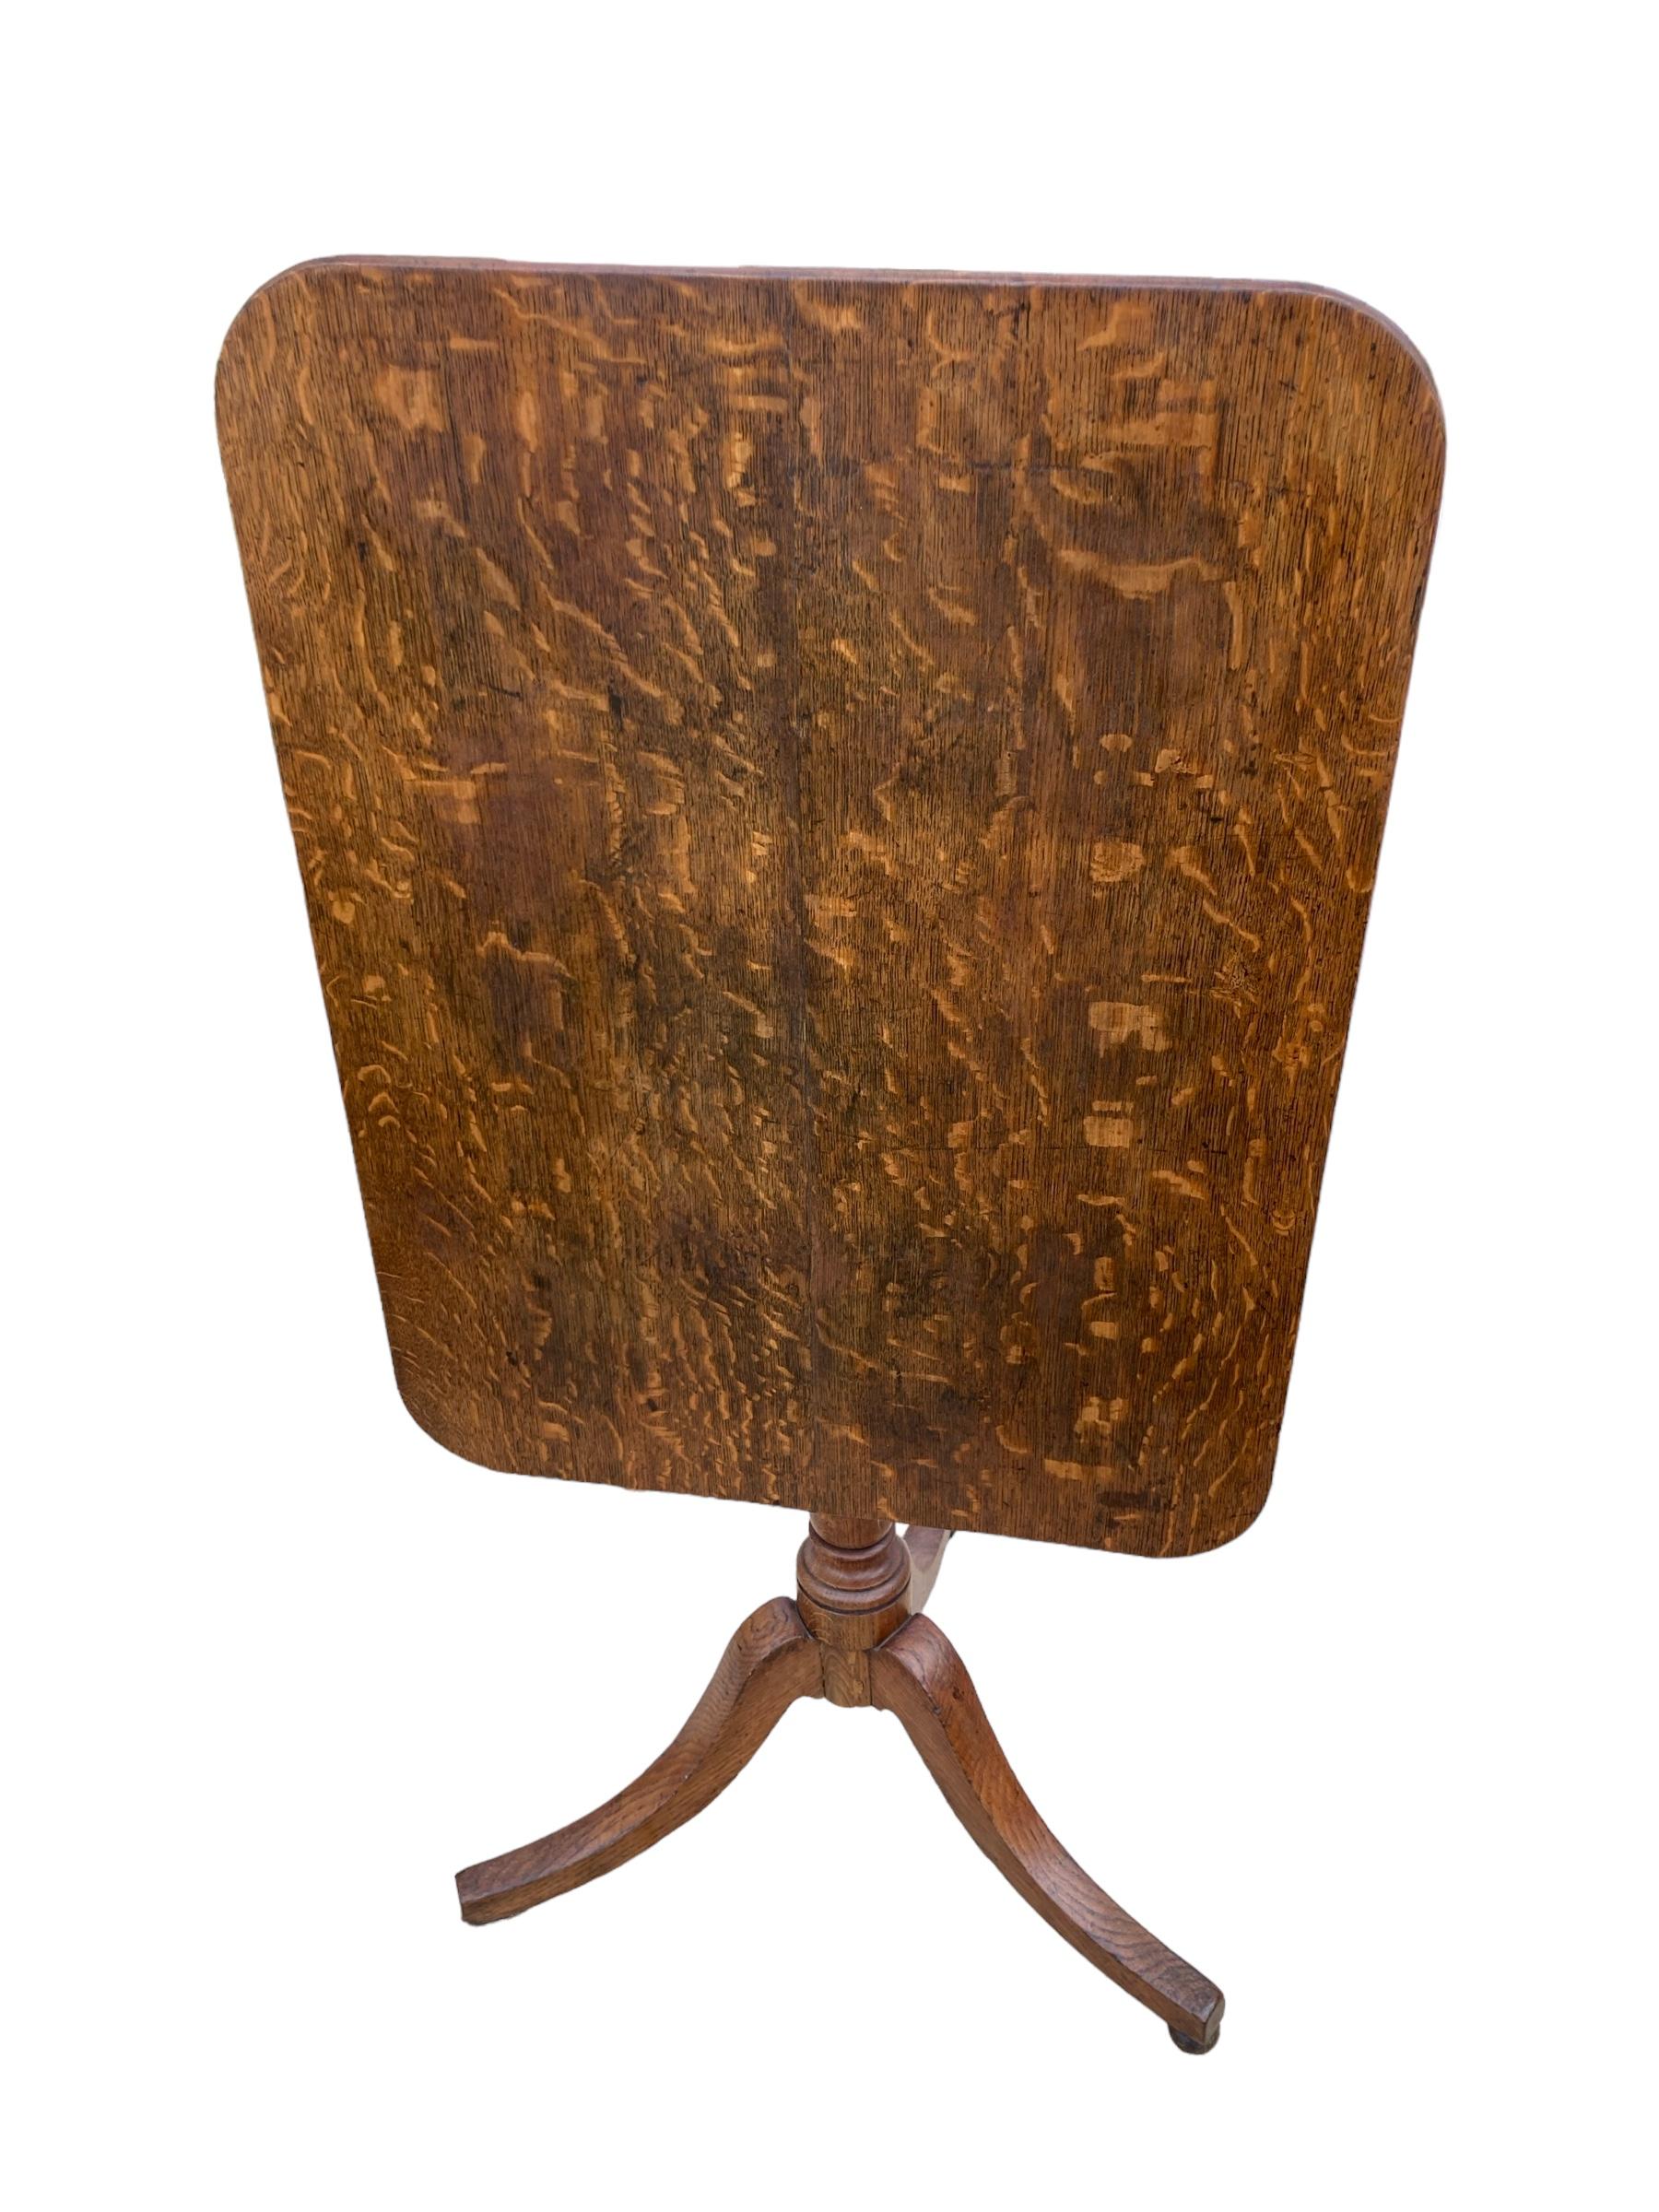 Table rectangulaire à trois pieds en chêne anglais du 19e siècle, à plateau basculant. Plateau en bois magnifiquement travaillé, ajoutant une touche d'élégance à n'importe quelle pièce. Les détails complexes et la construction robuste en font une